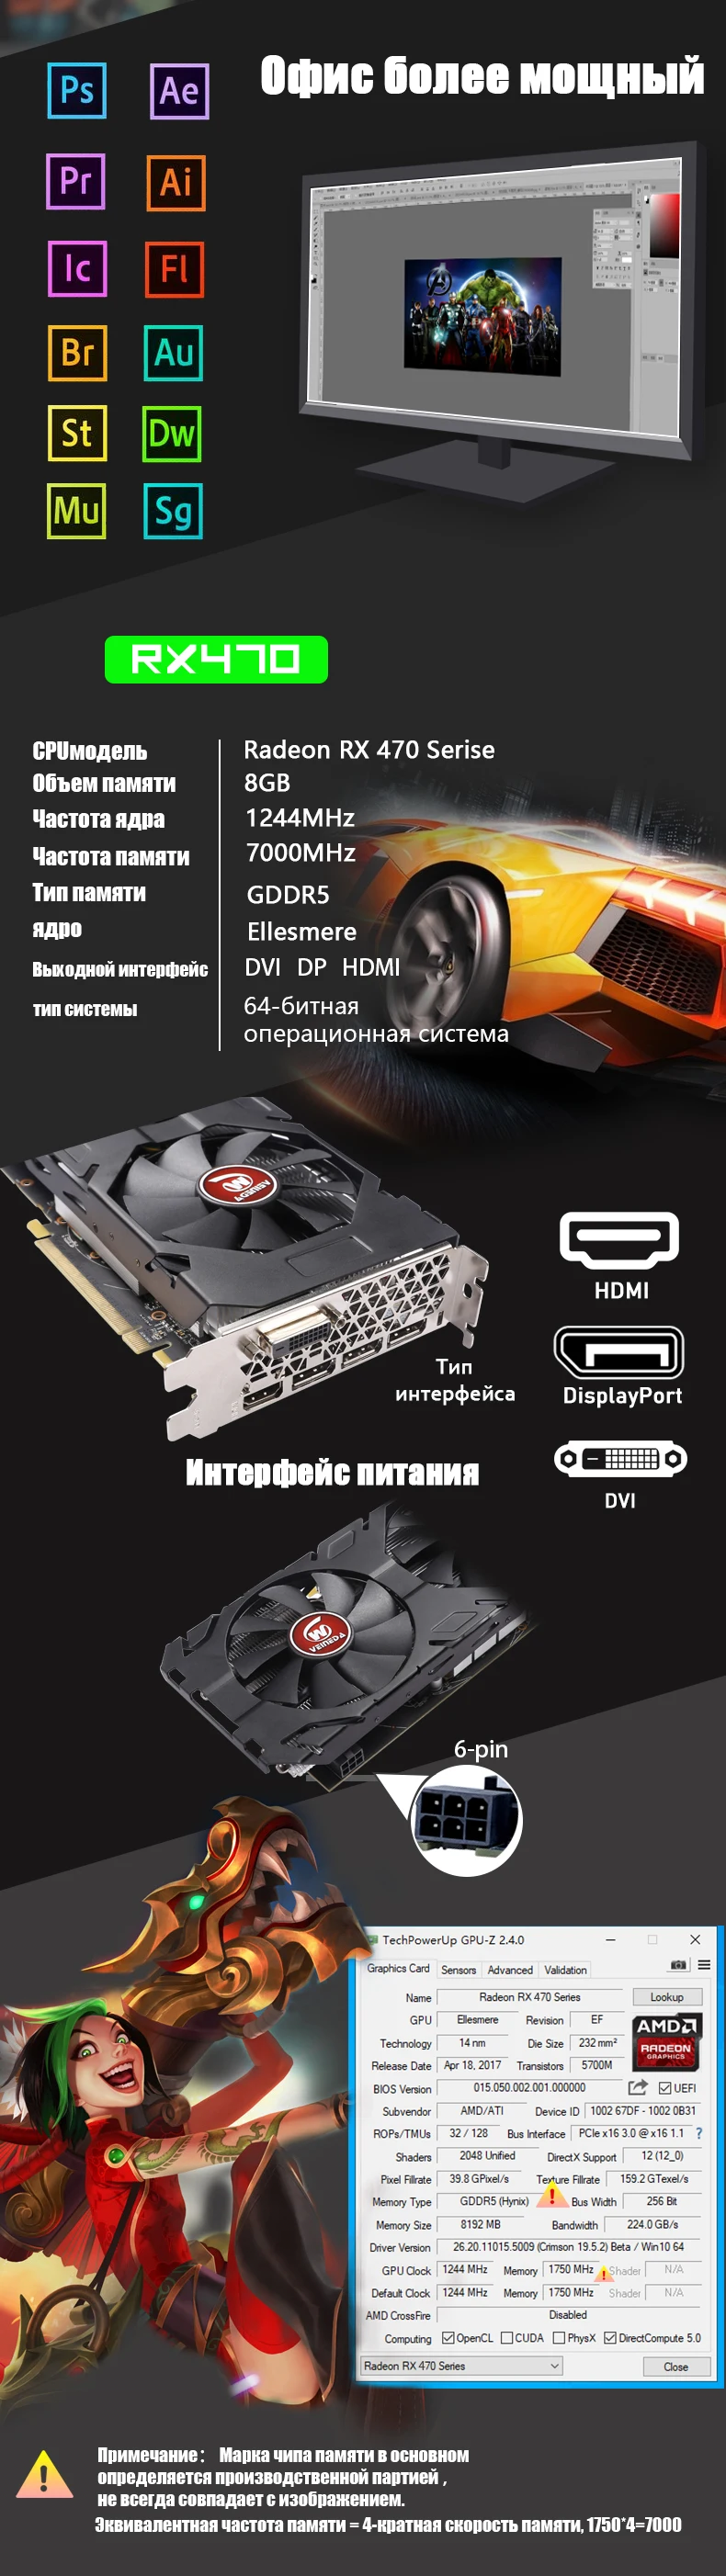 VEINEDA оригинальная видеокарта AMD Radeon rx 470 8 Гб 256Bit GDDR5 PCI-E 3,0 HDMI DP видеокарта для игр nVIDIA Geforce